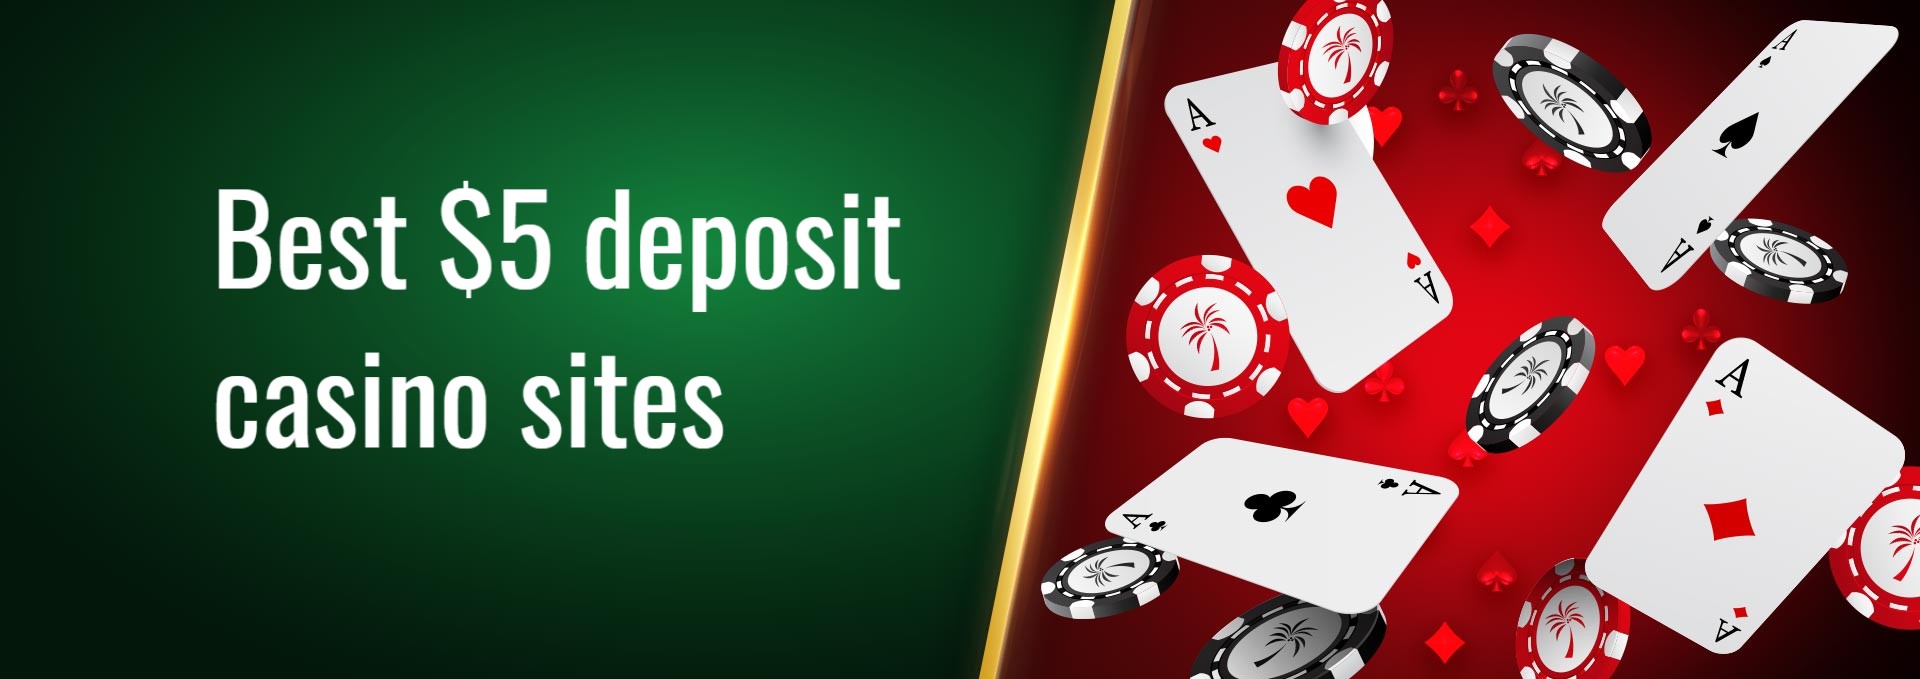 Paysafecard casino bet sites 66156